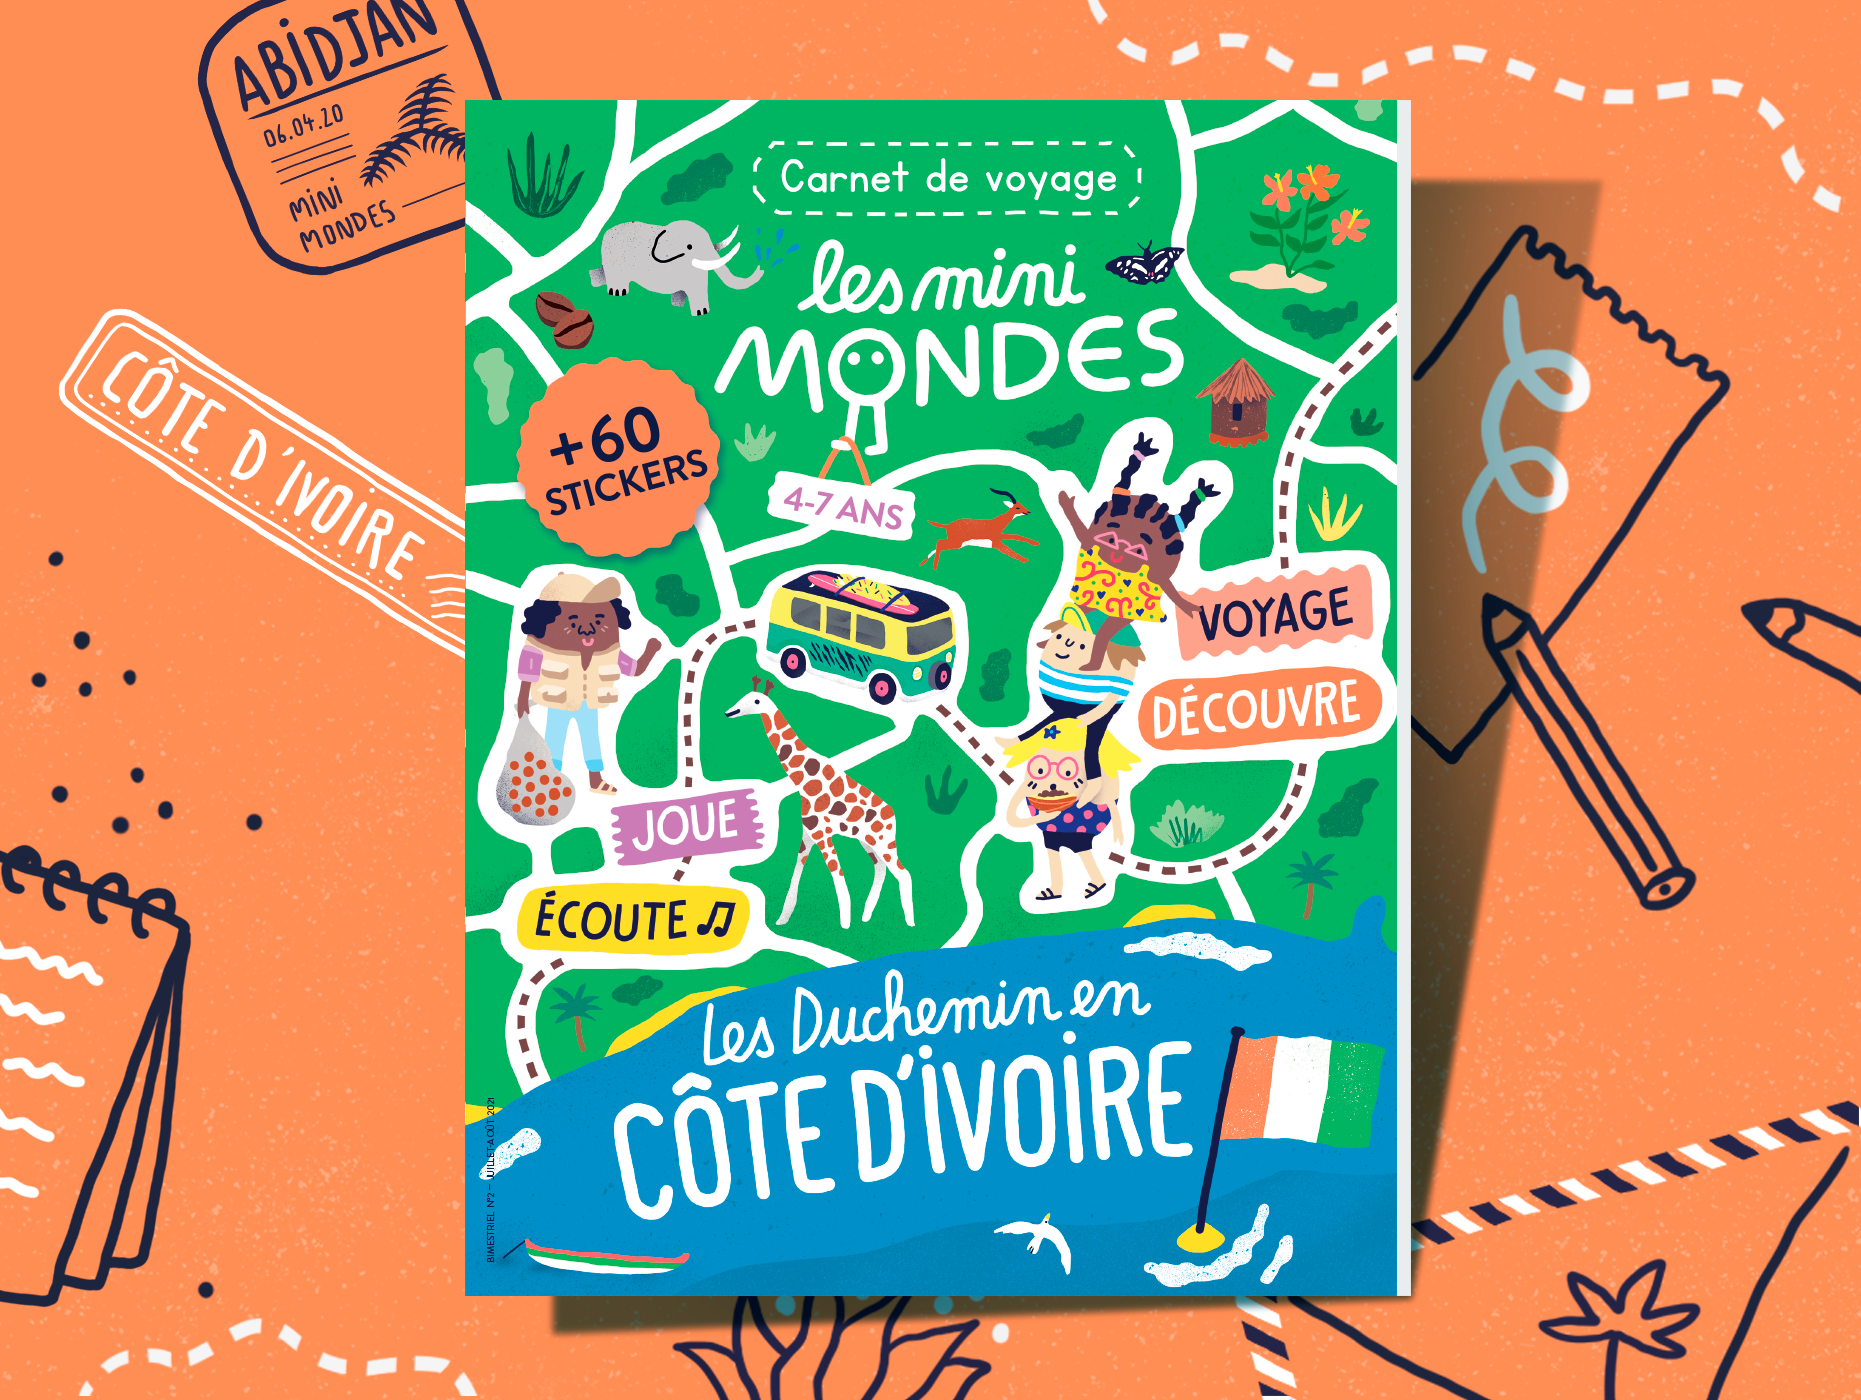 Les mini mondes - Carnet de voyage Côte d'Ivoire 4-7ans